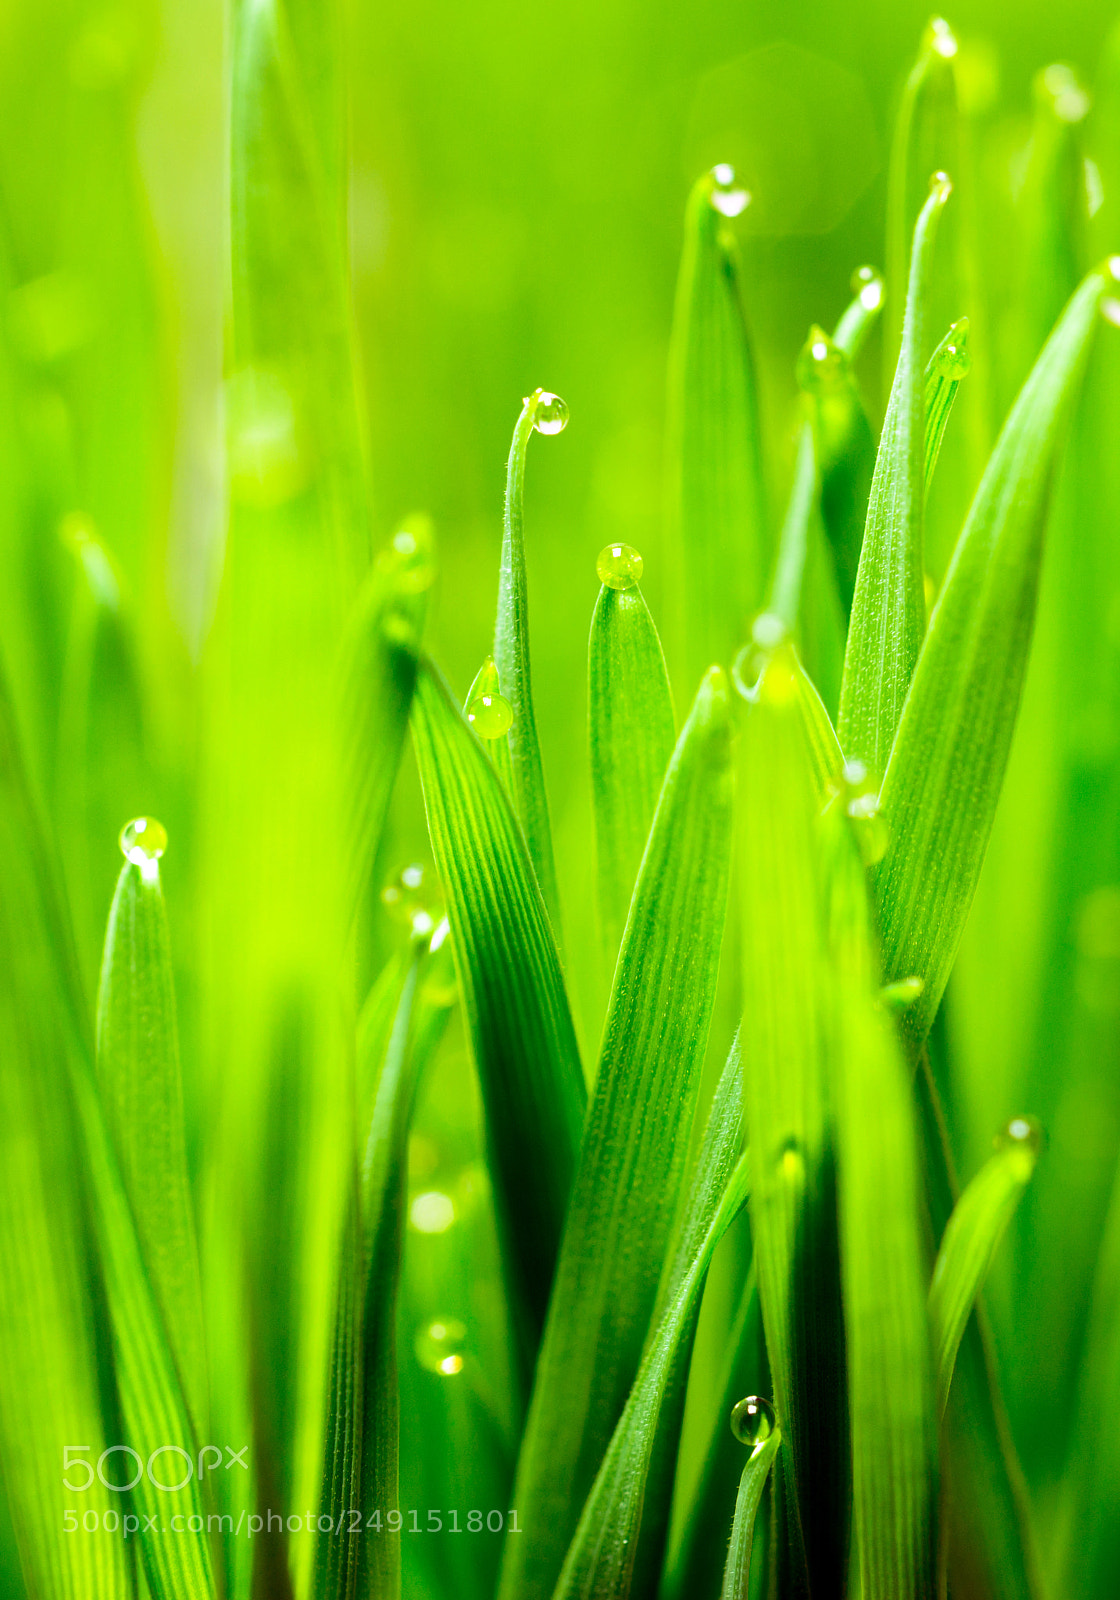 Sony a99 II sample photo. Microgreens growing panoramic dew photography